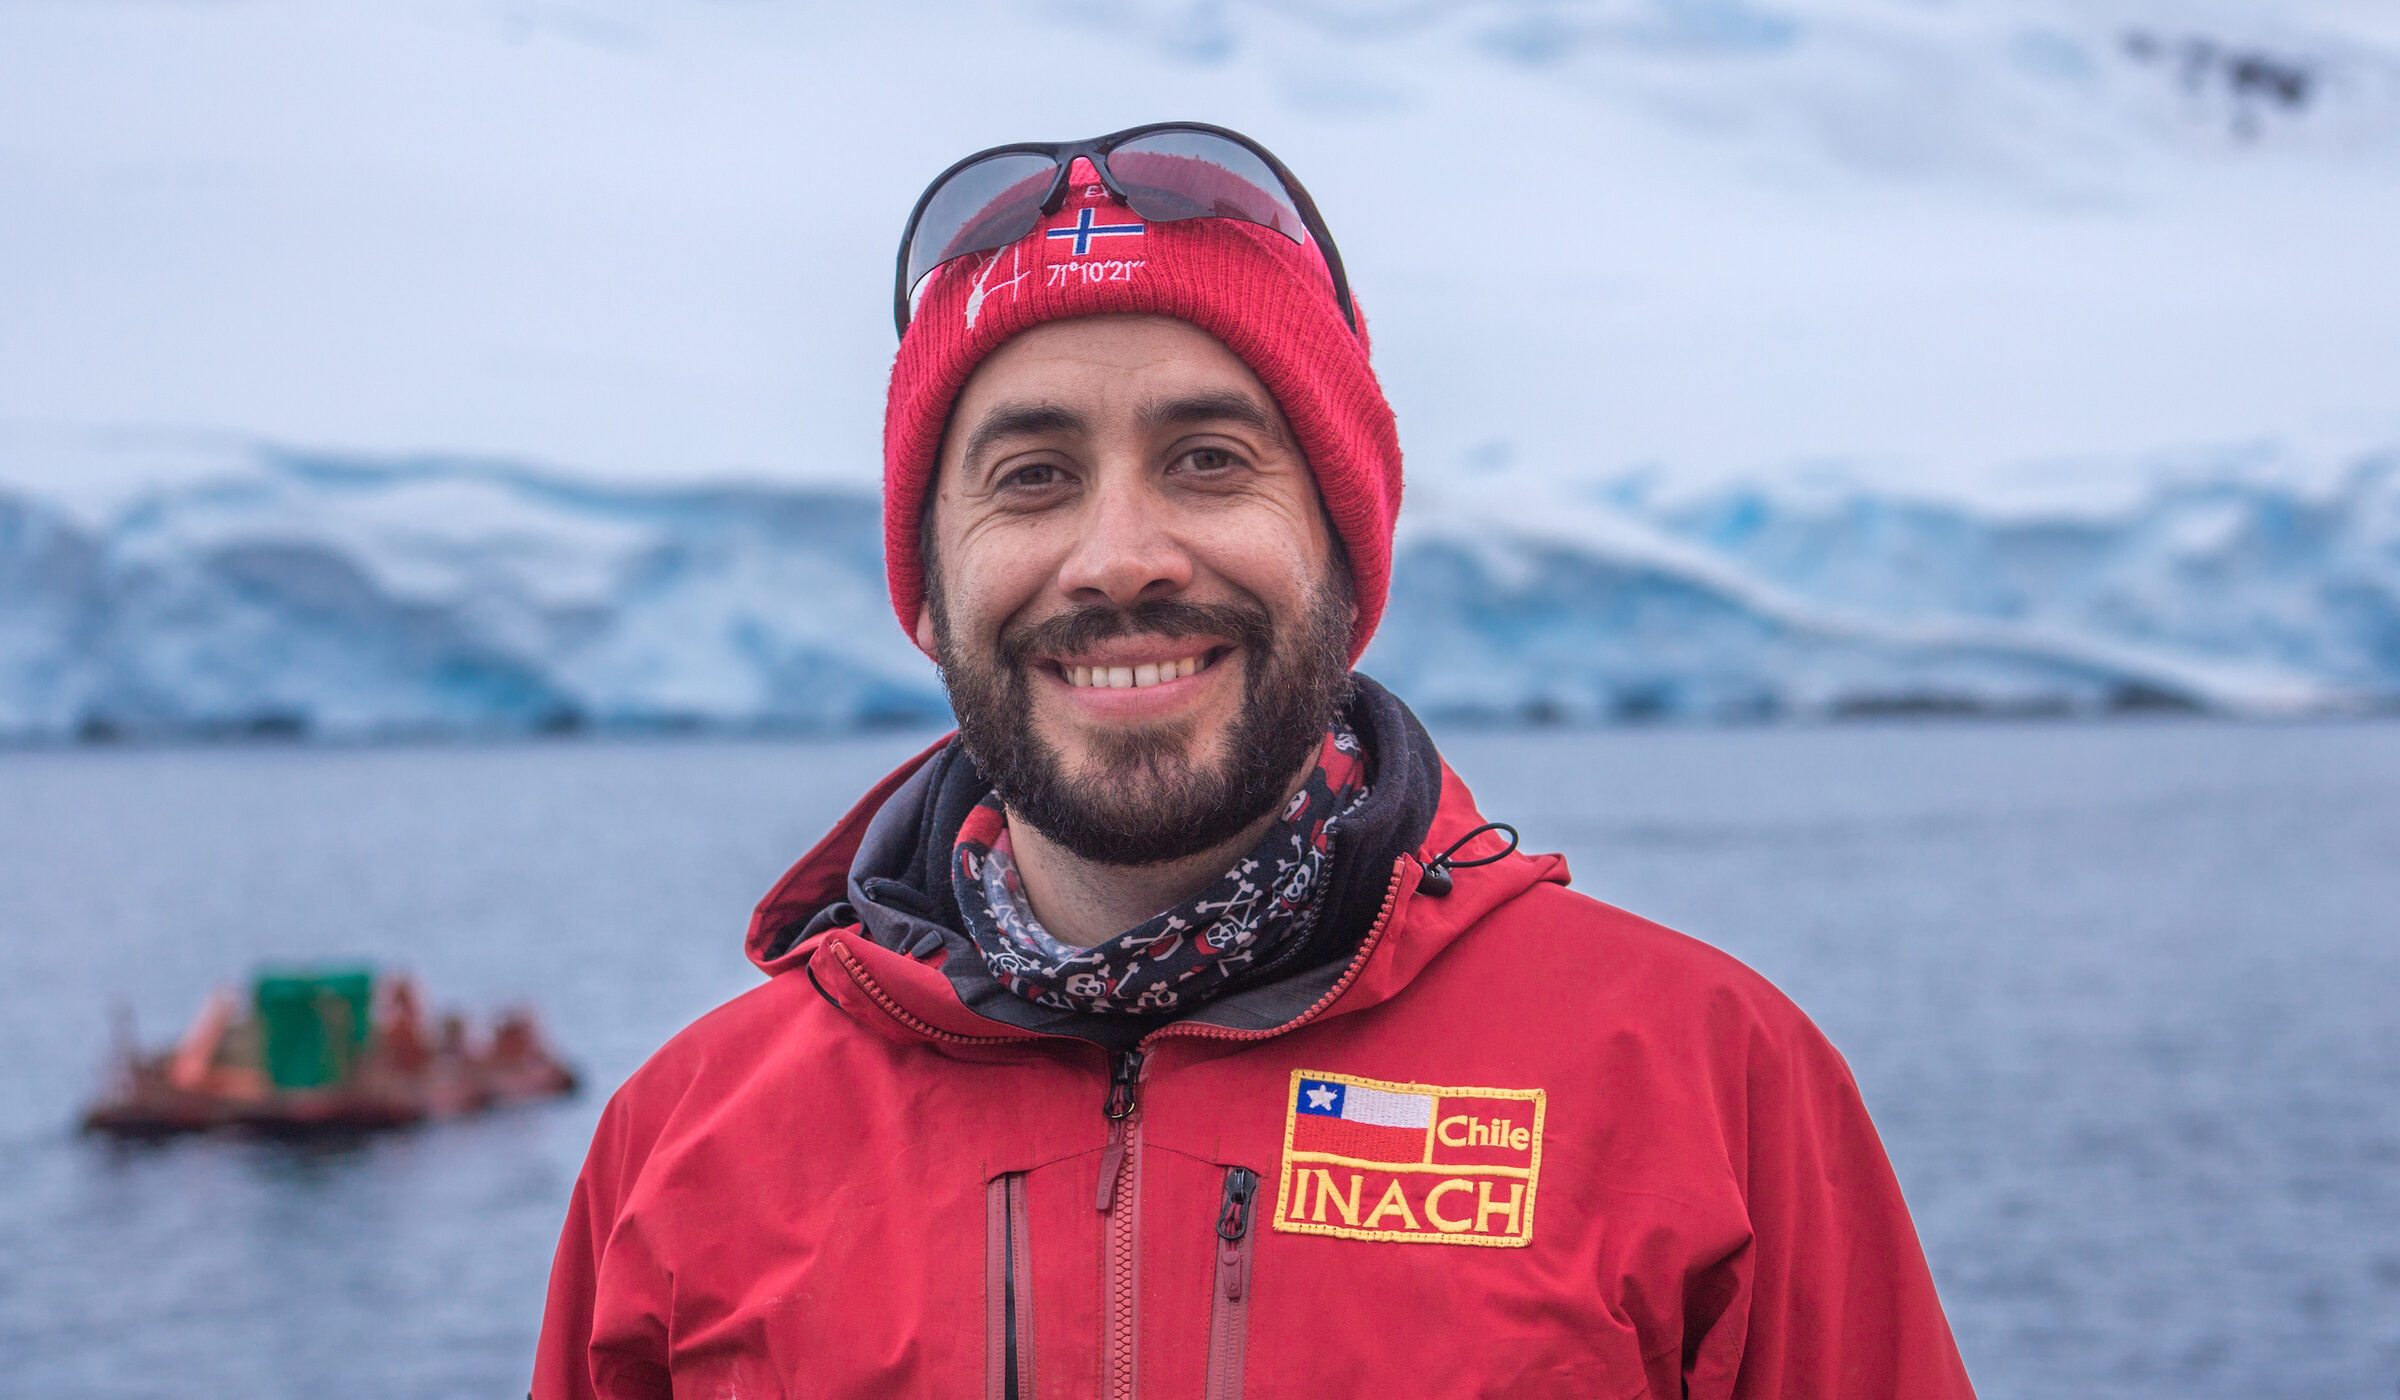 César Cárdenas: El investigador chileno que presidirá el Comité Científico, uno de los puestos más prestigiosos del Sistema del Tratado Antártico